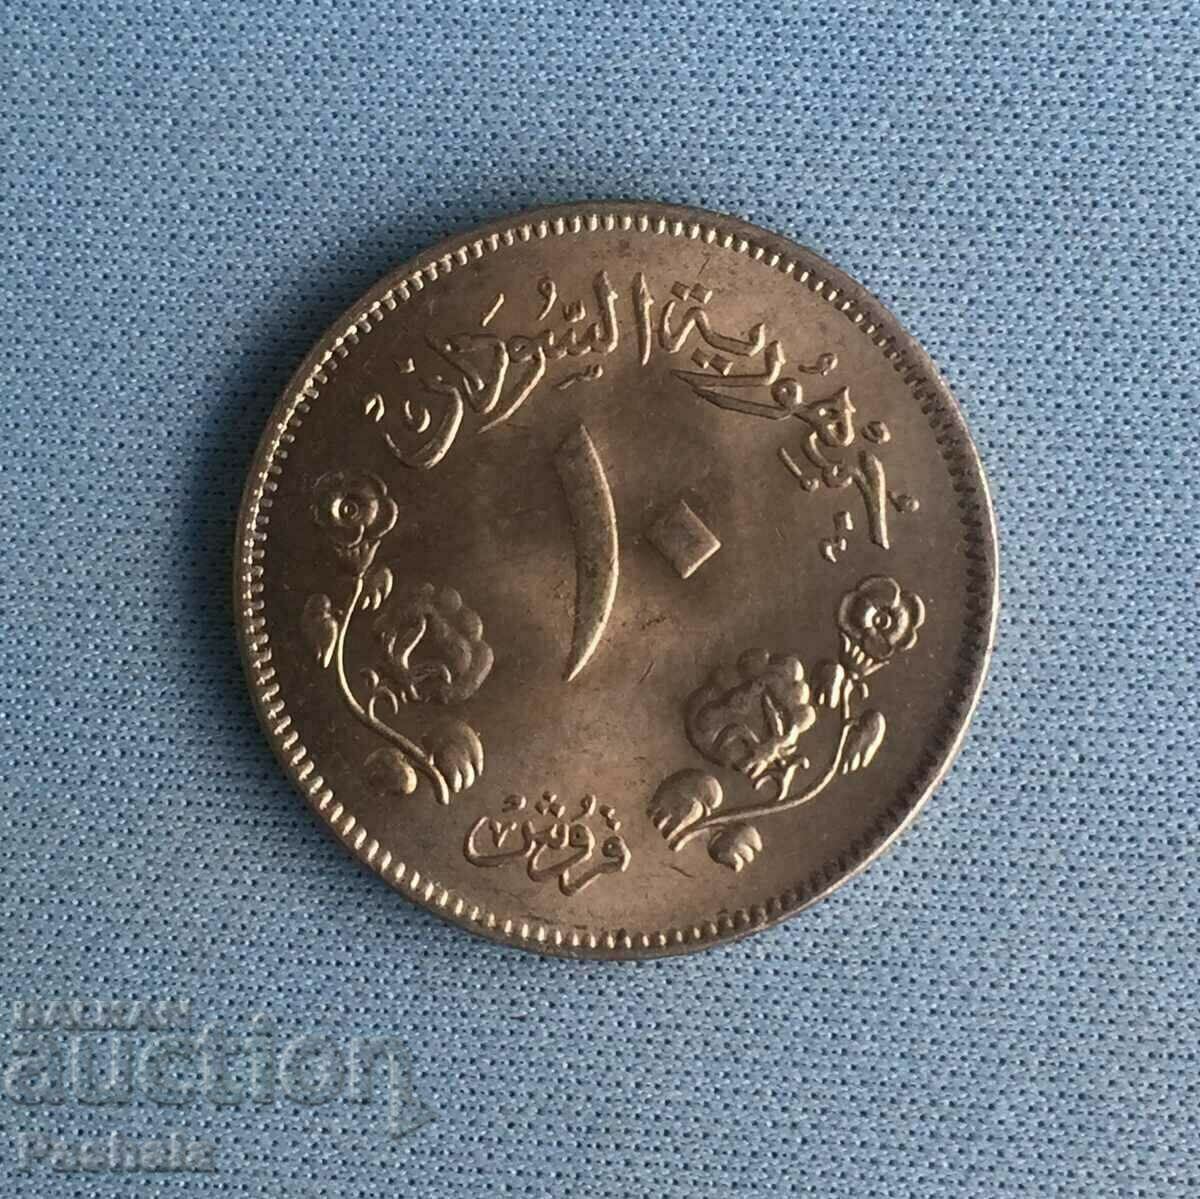 Sudan 10 piastres 1956